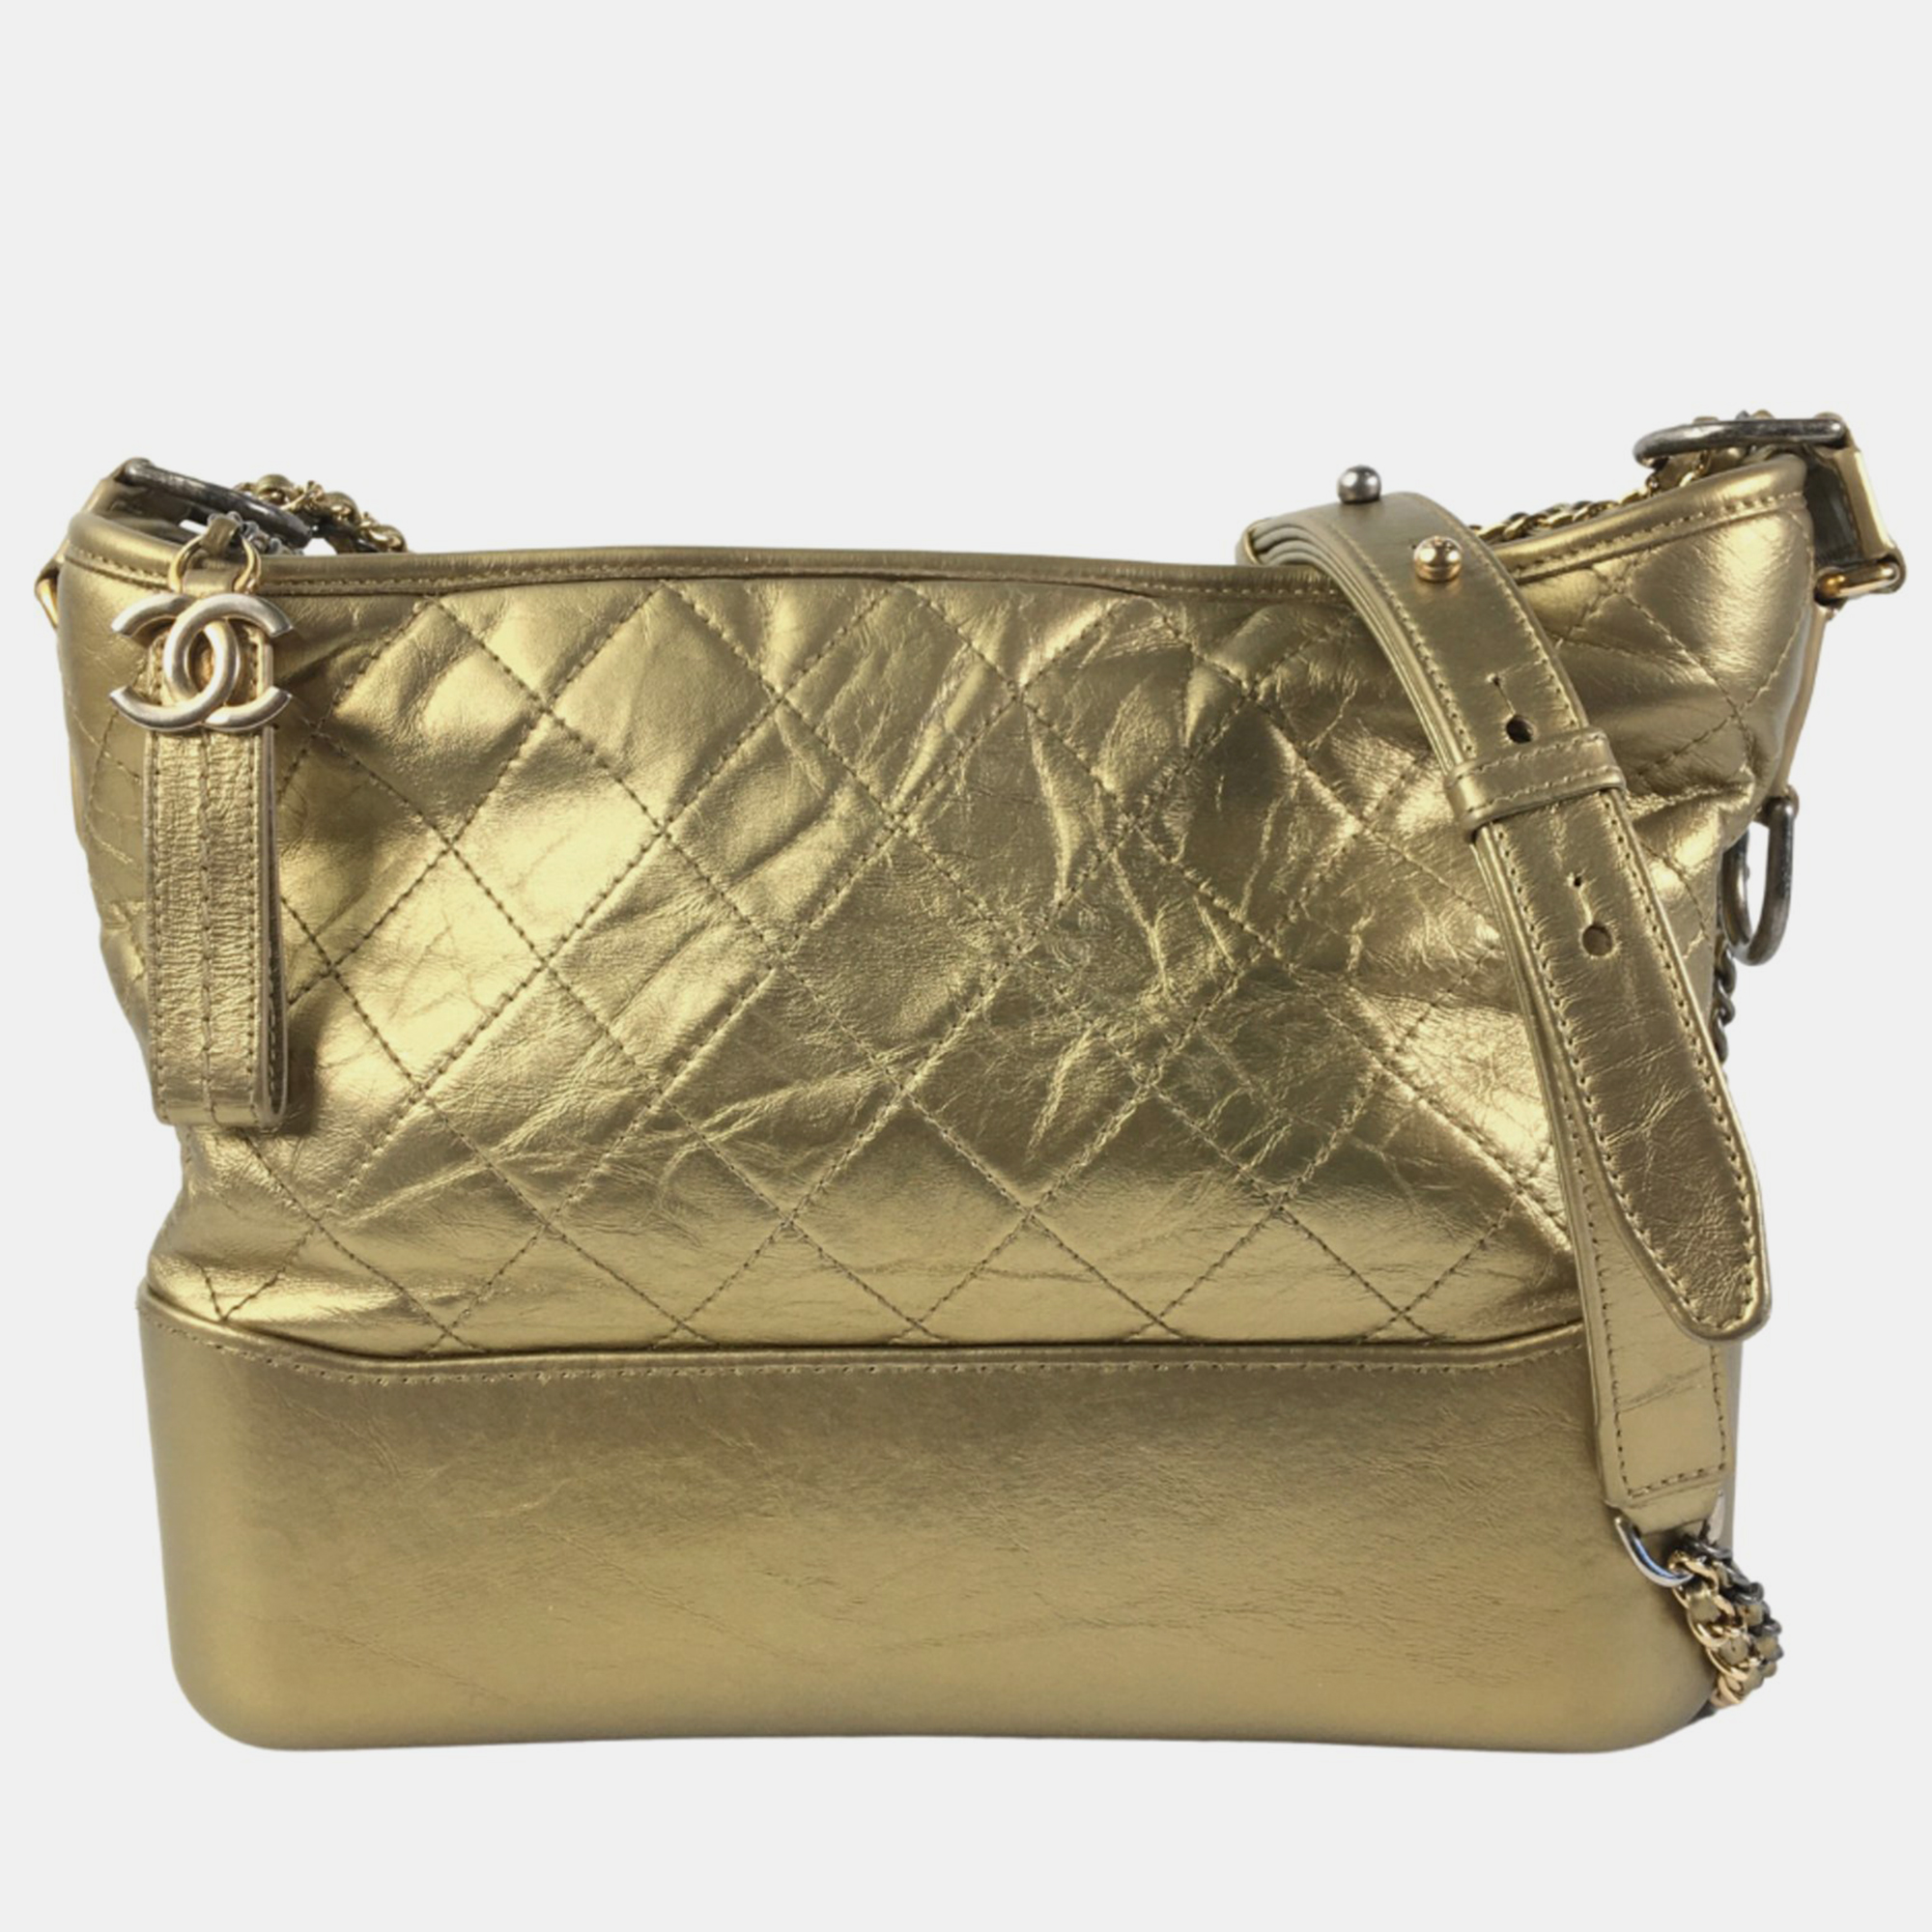 Chanel gold leather medium gabrielle shoulder bag